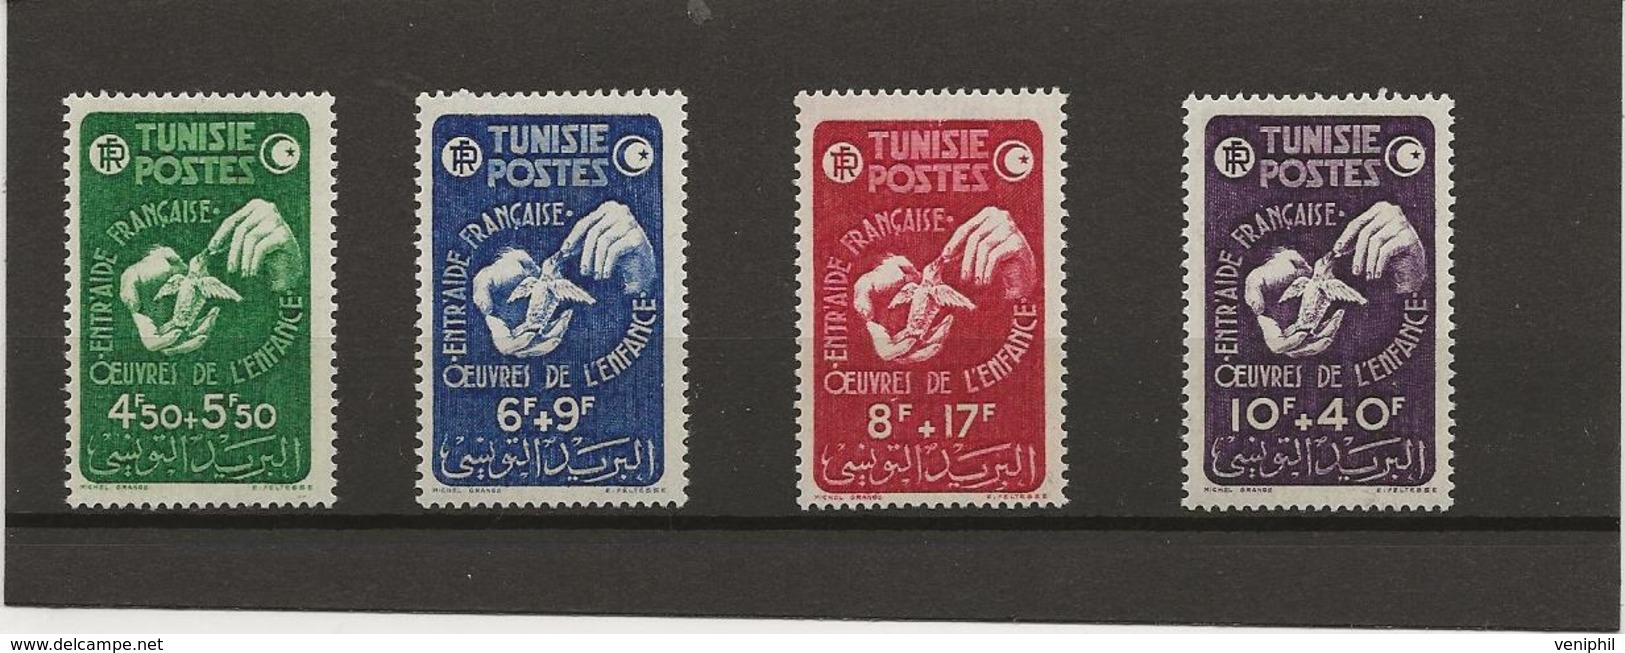 TUNISIE - N° 320 A 323 NEUF SANS CHARNIERE  -ANNEE 1947 - Nuevos